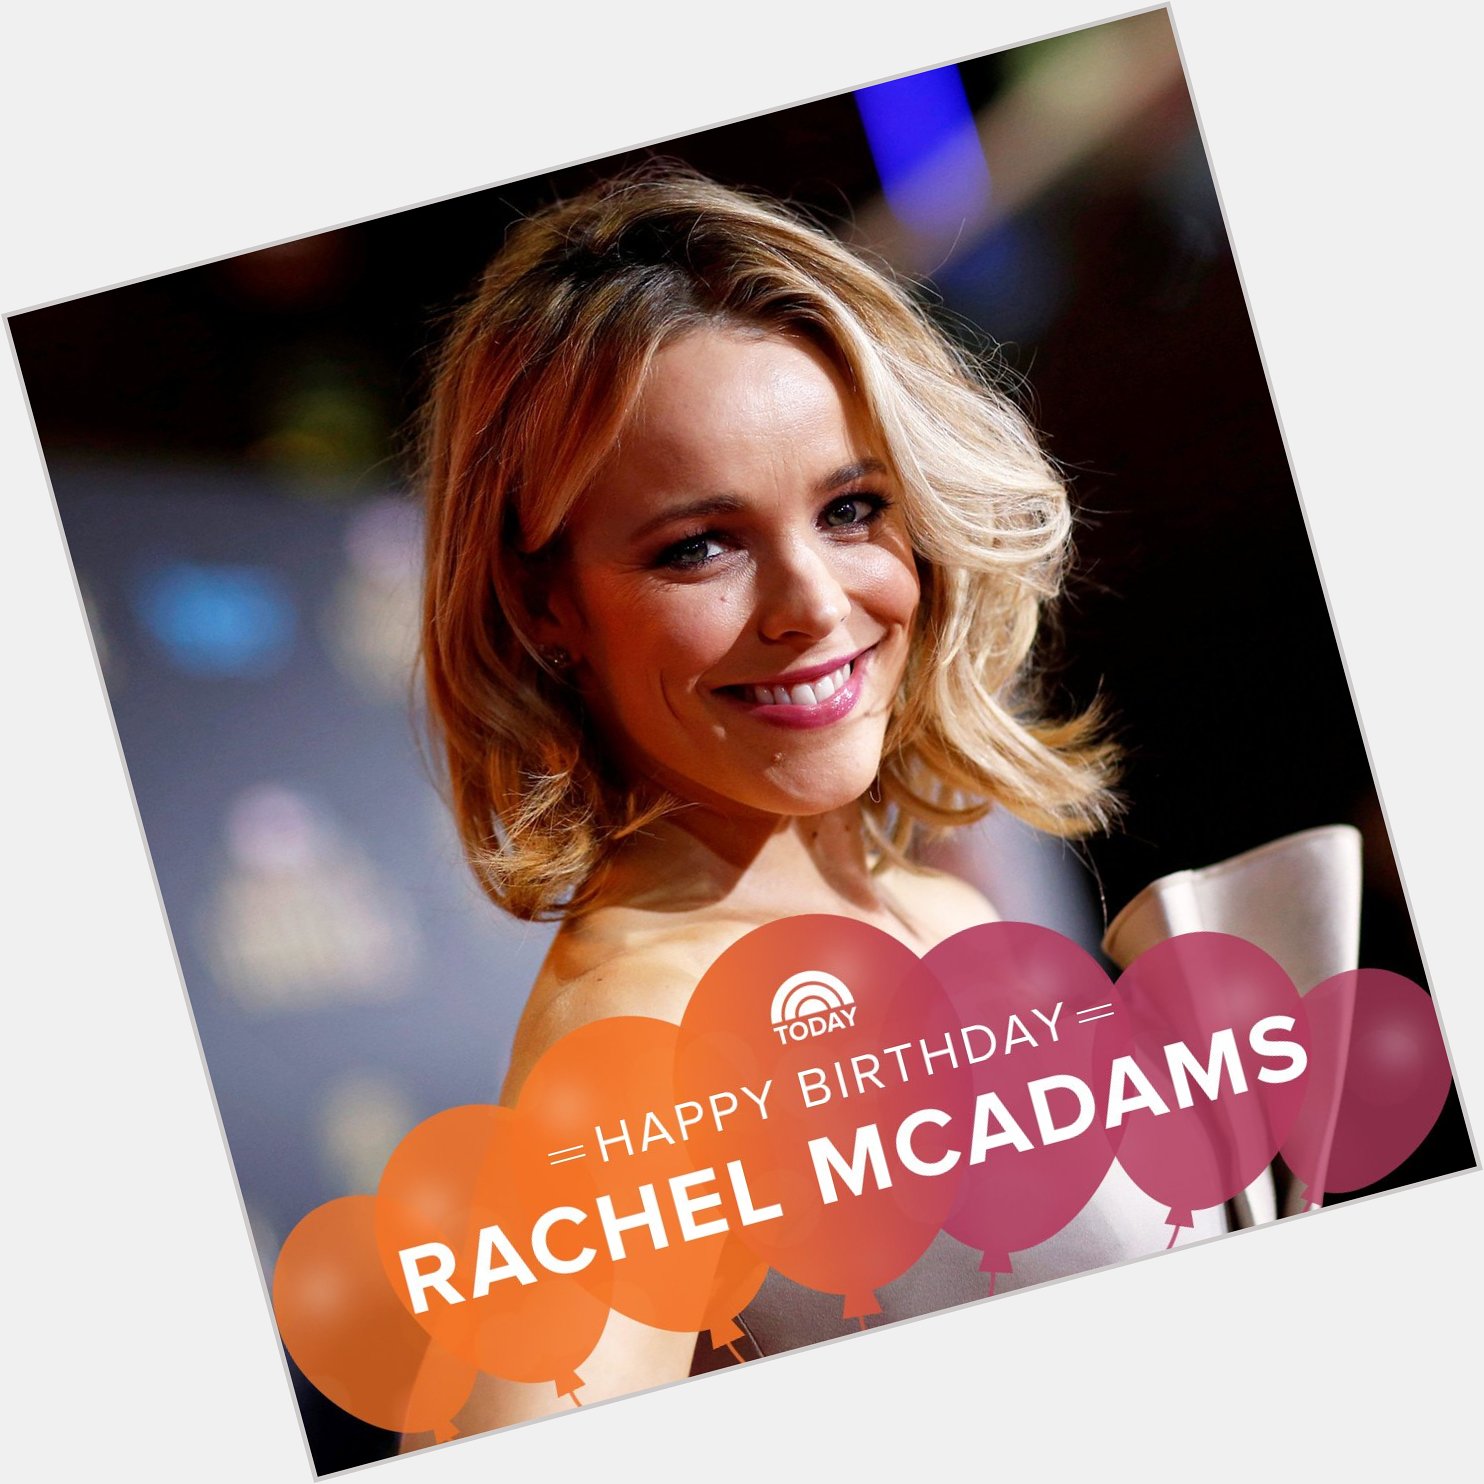 Happy birthday, Rachel McAdams! 